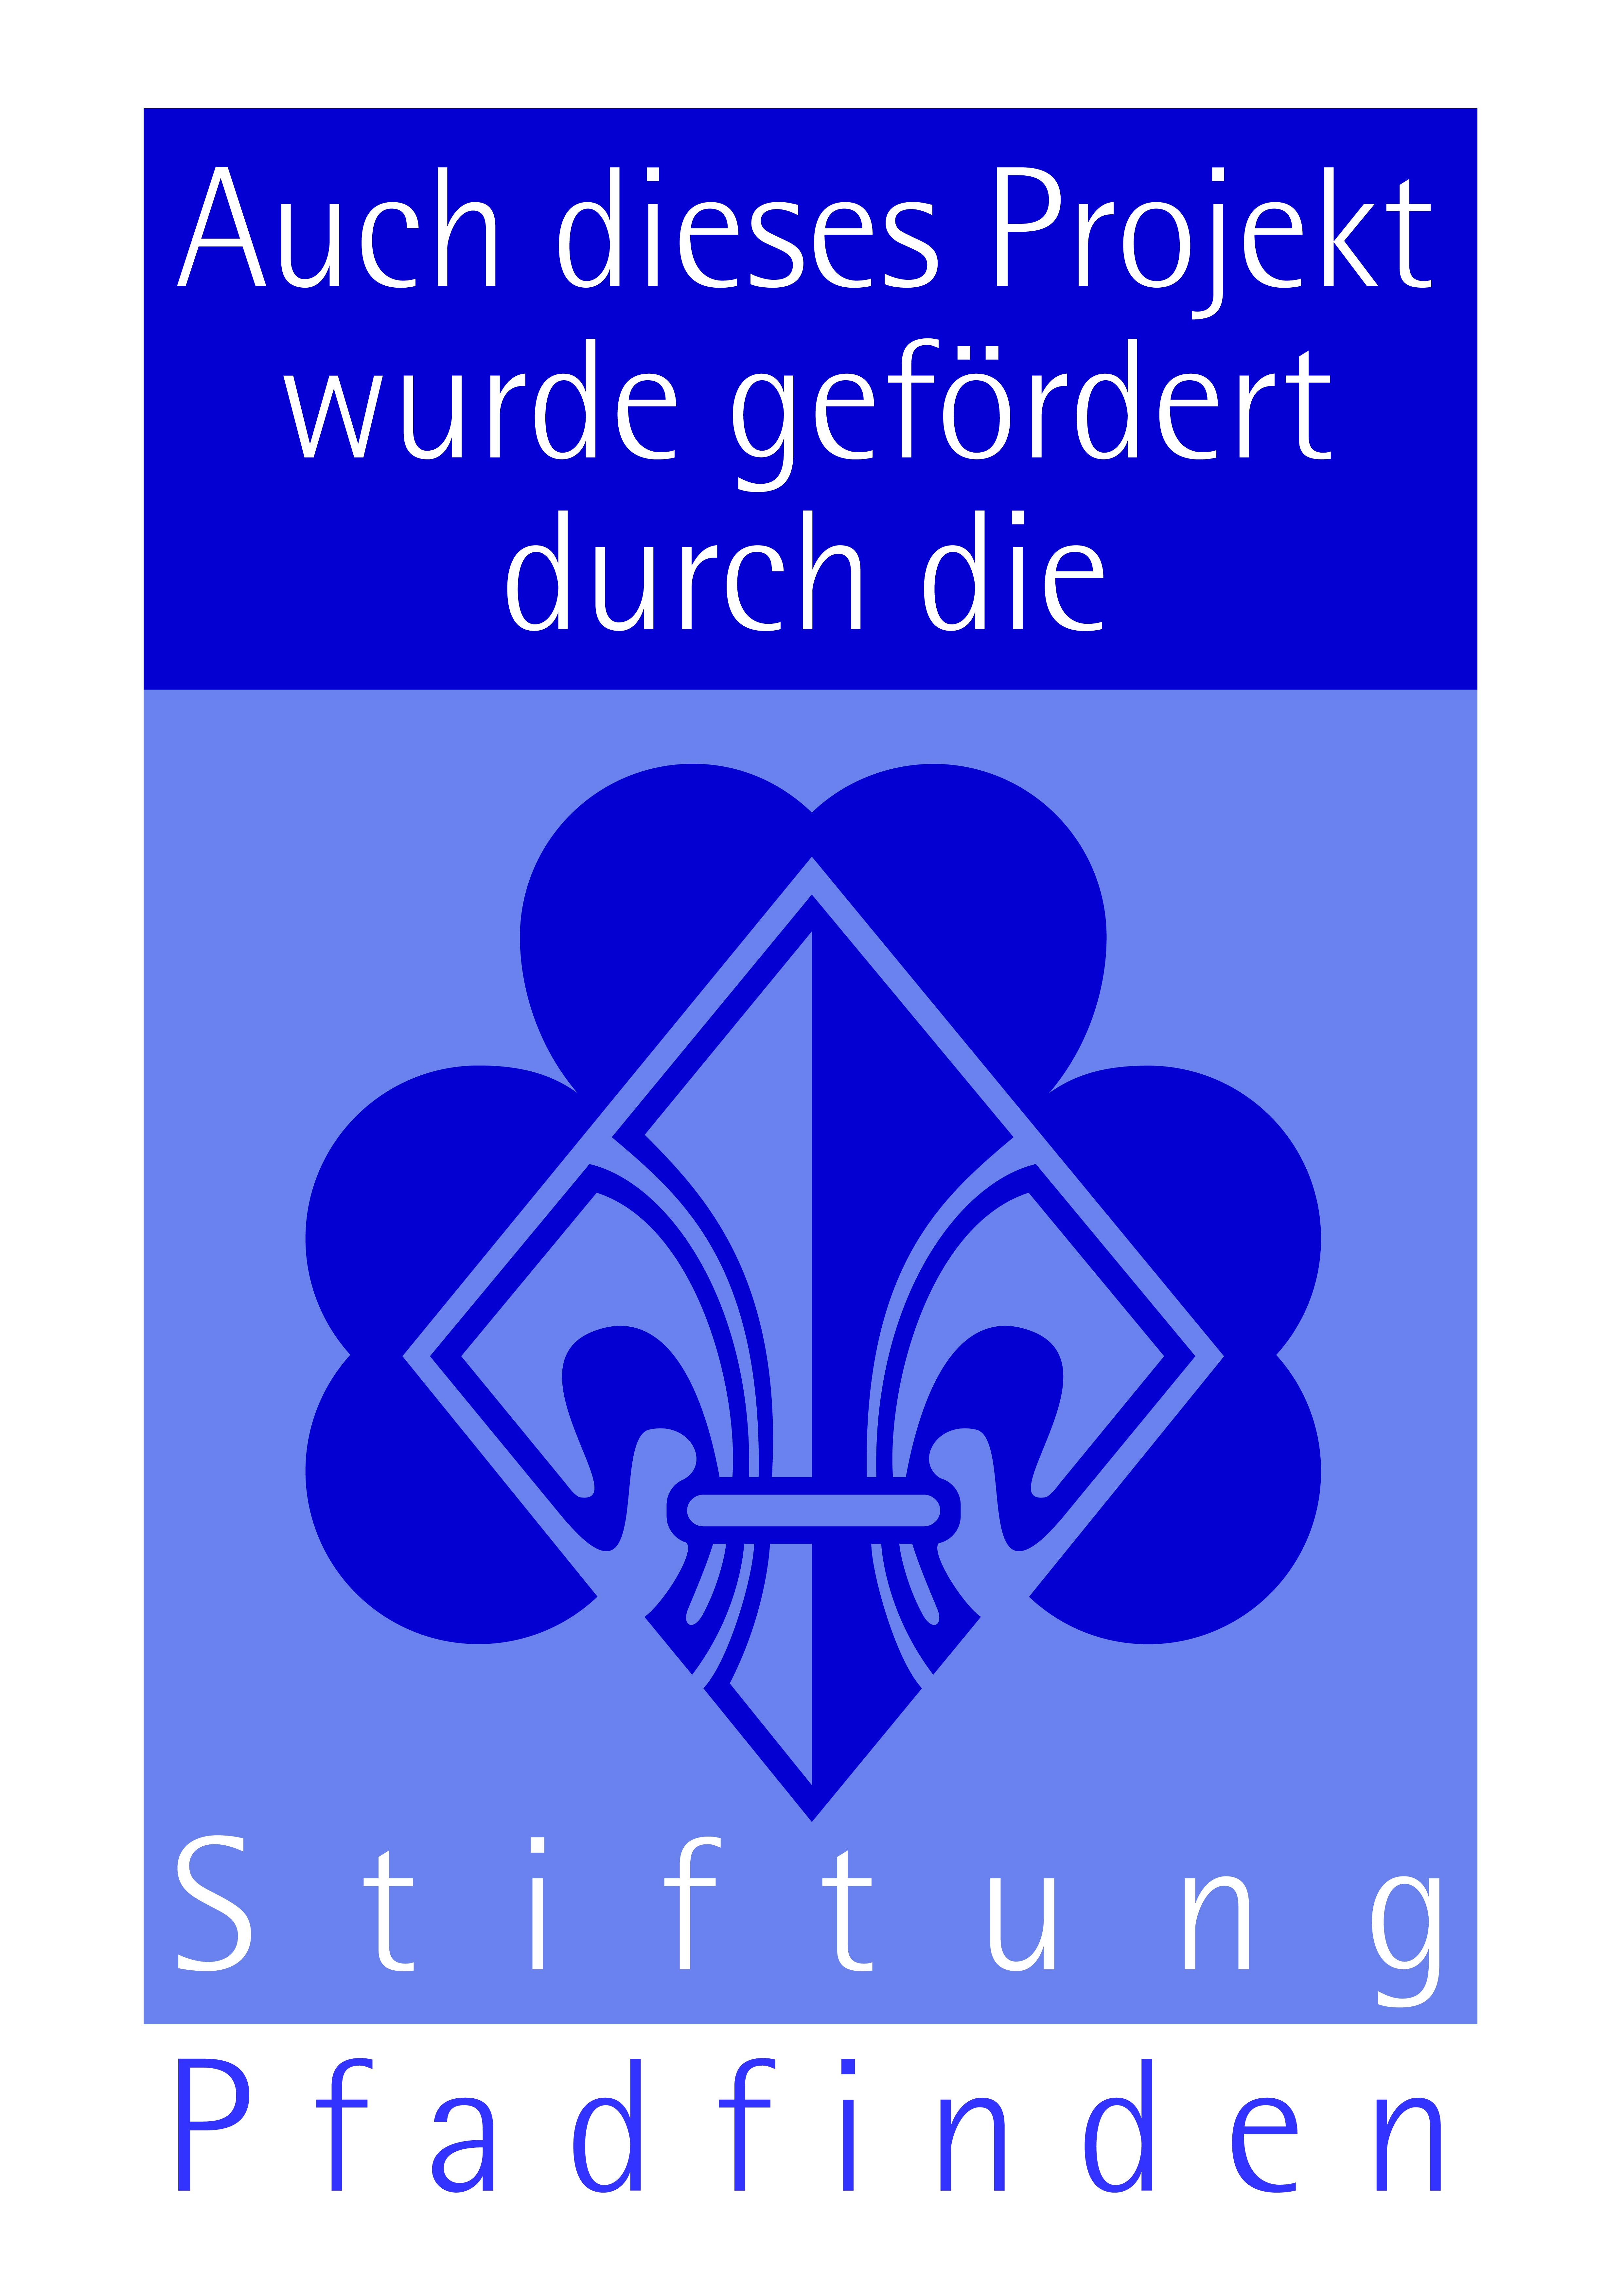 Stiftung Pfadfinden logo